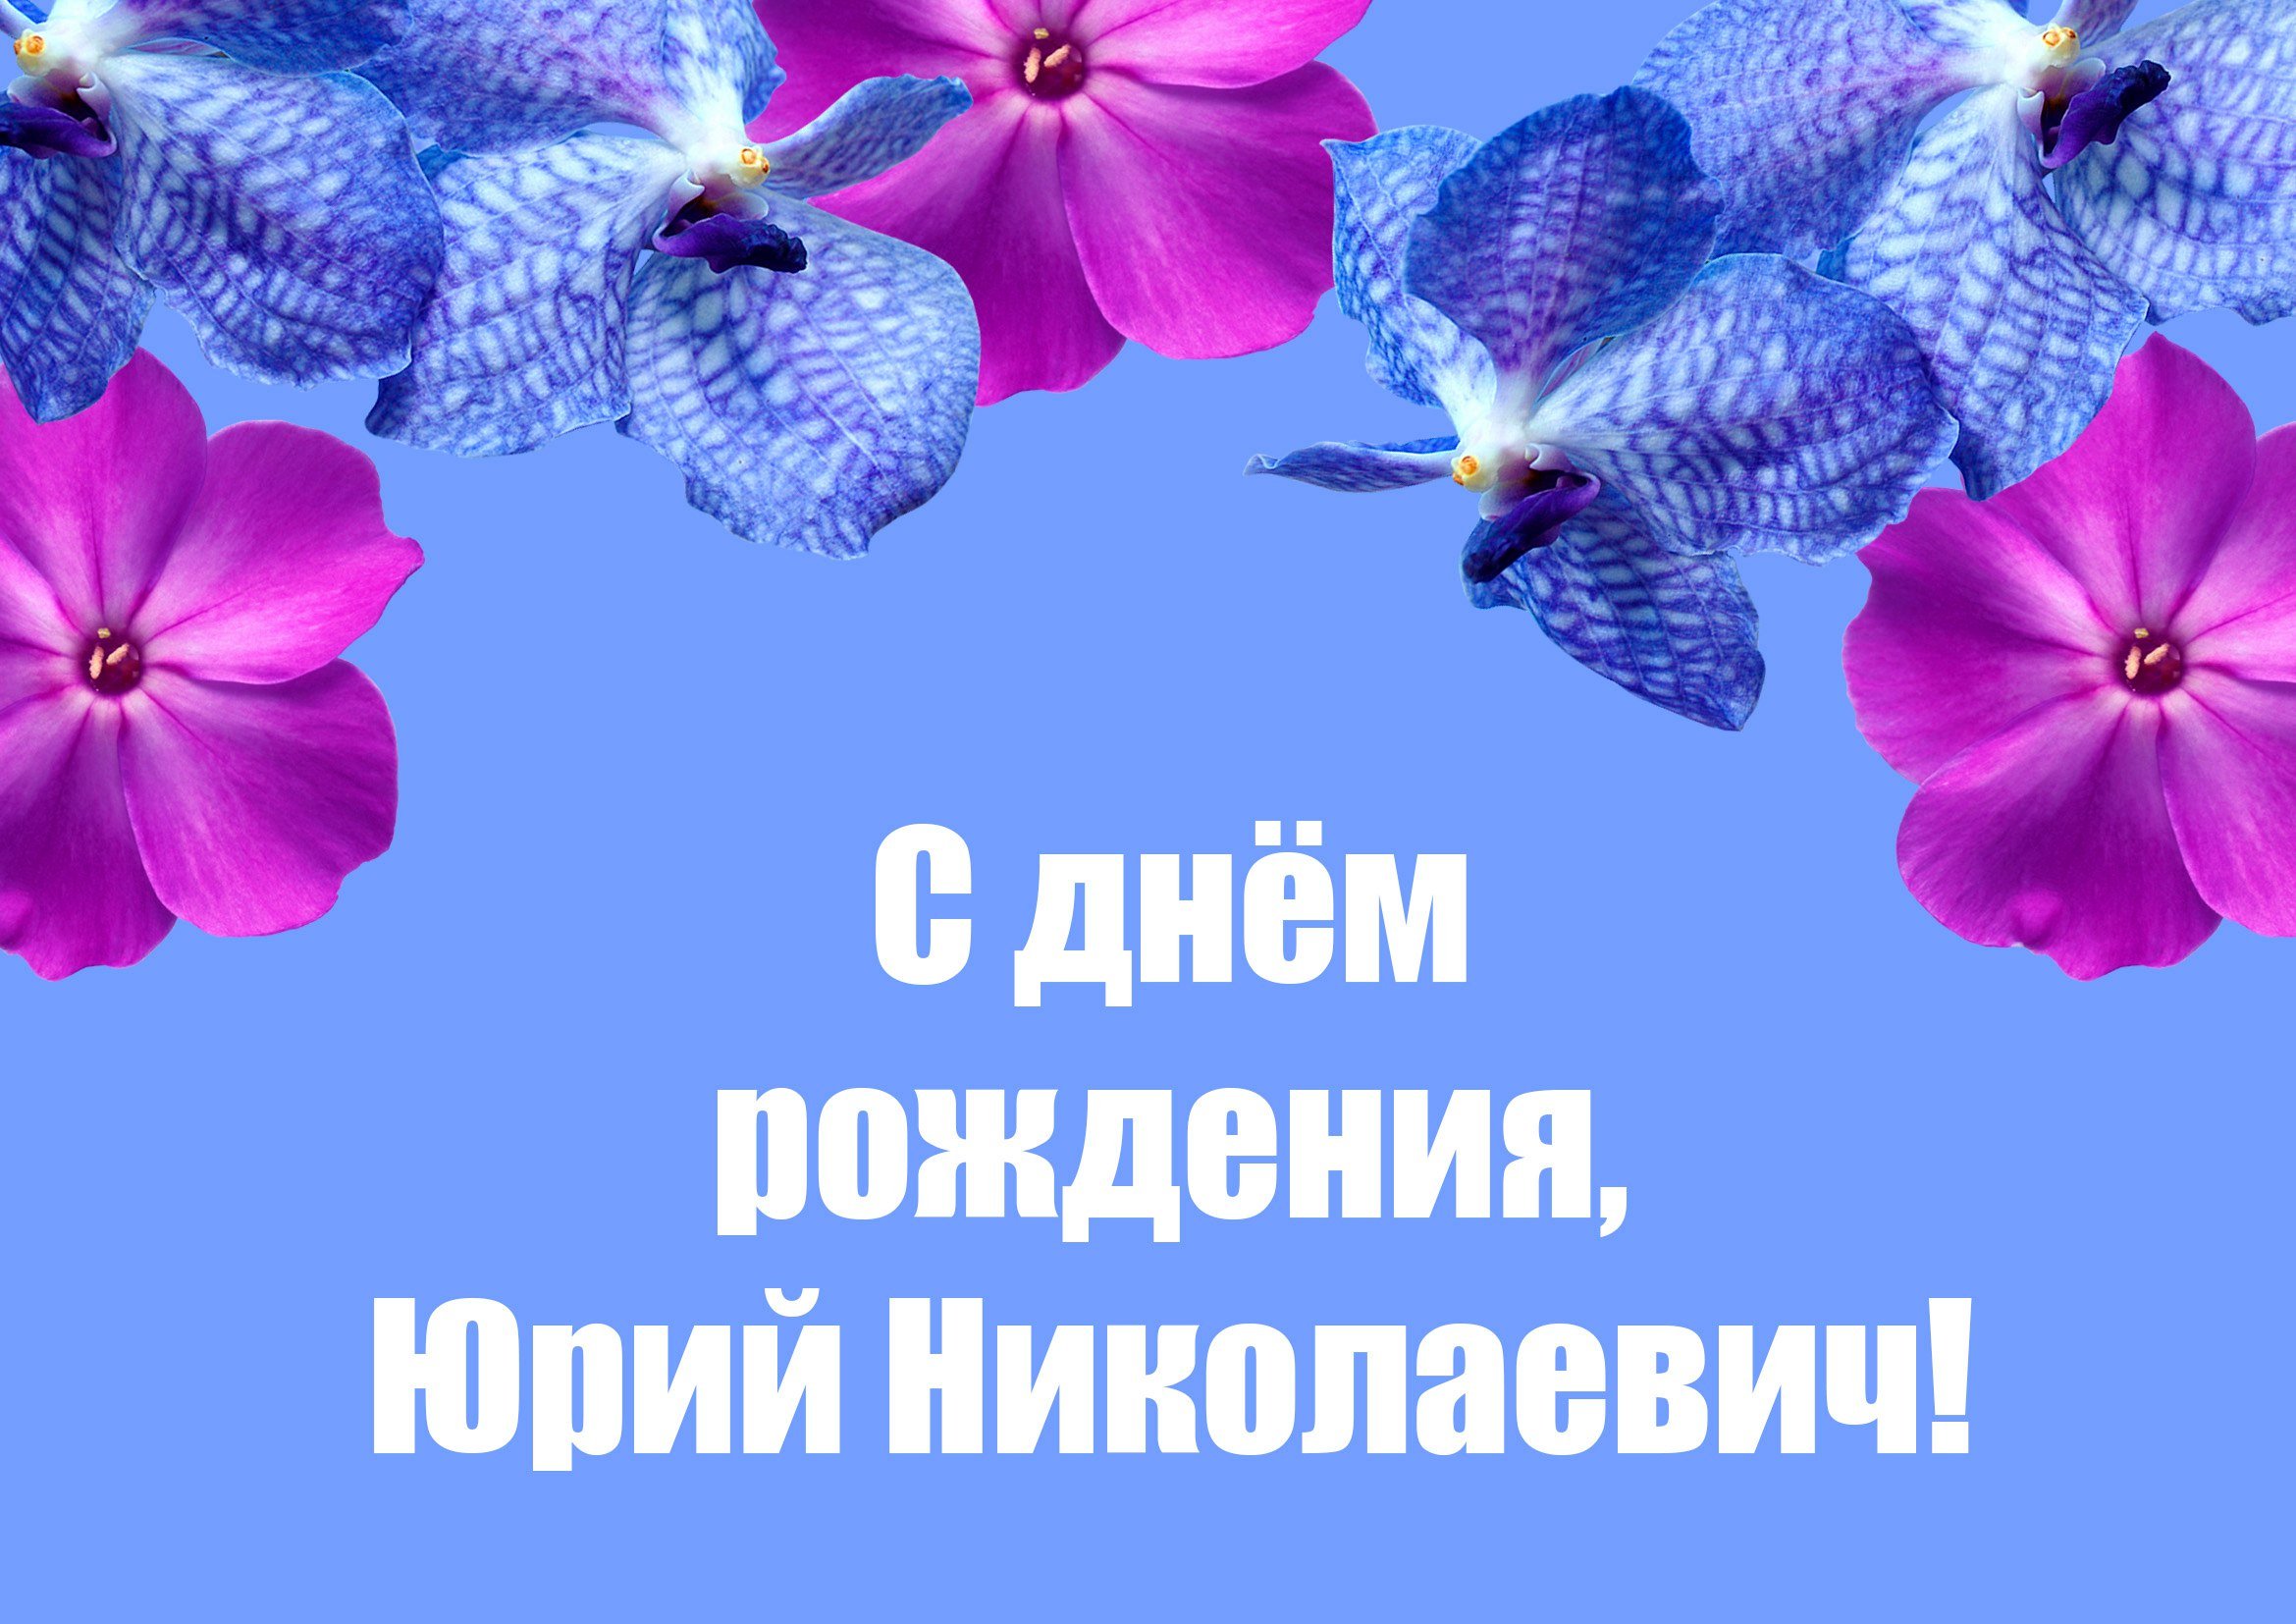 Поздравить Юрия Николаевича с днем рождения